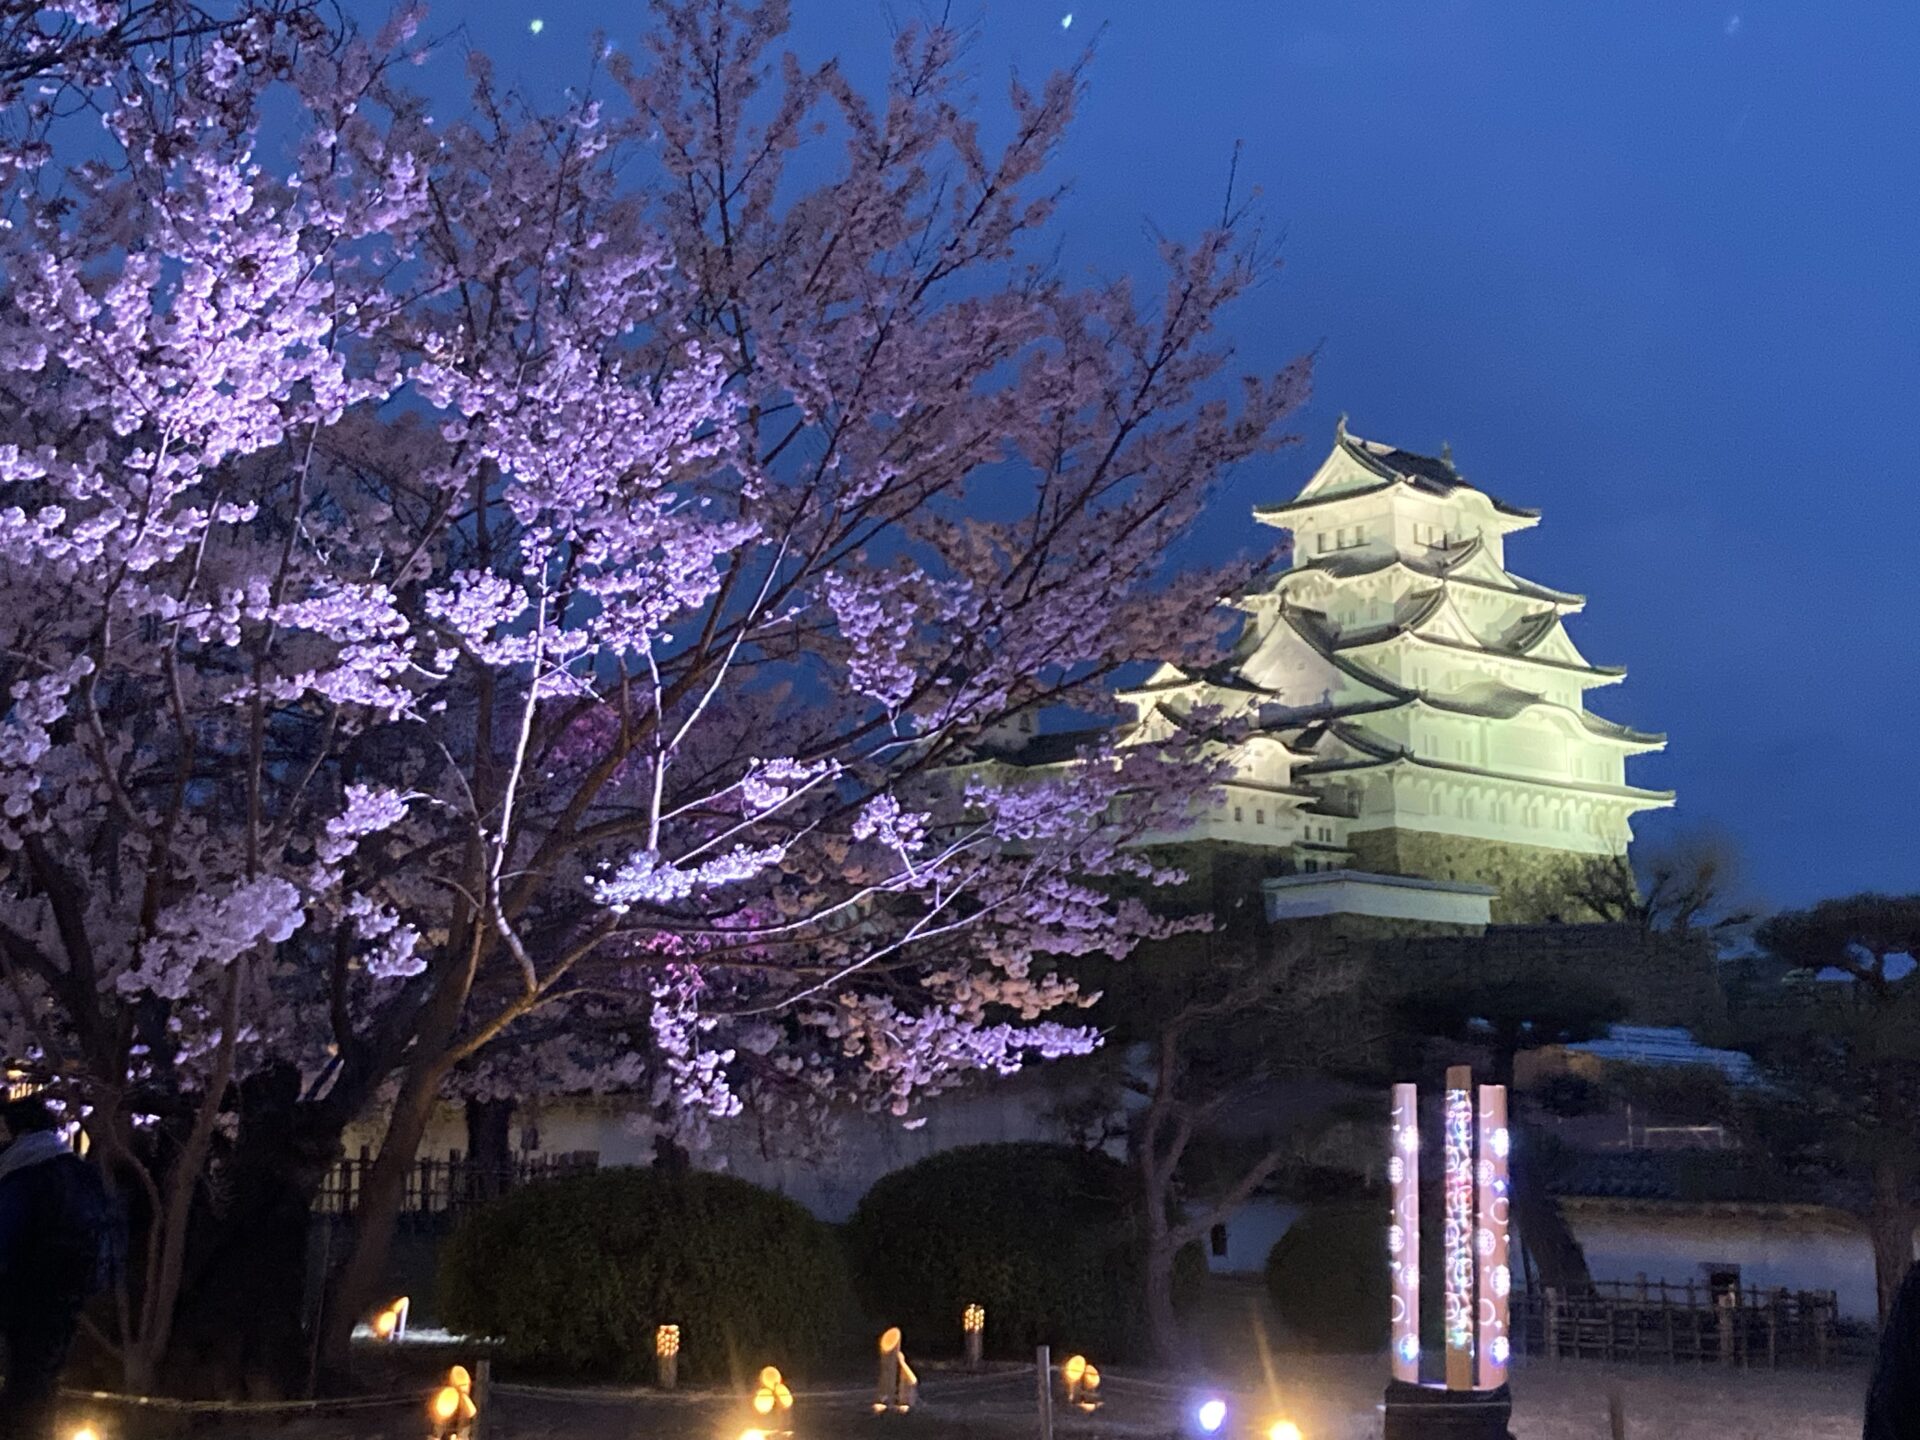 大正6年創刊 播磨時報 桜 城 光のコラボ 姫路城で夜桜会